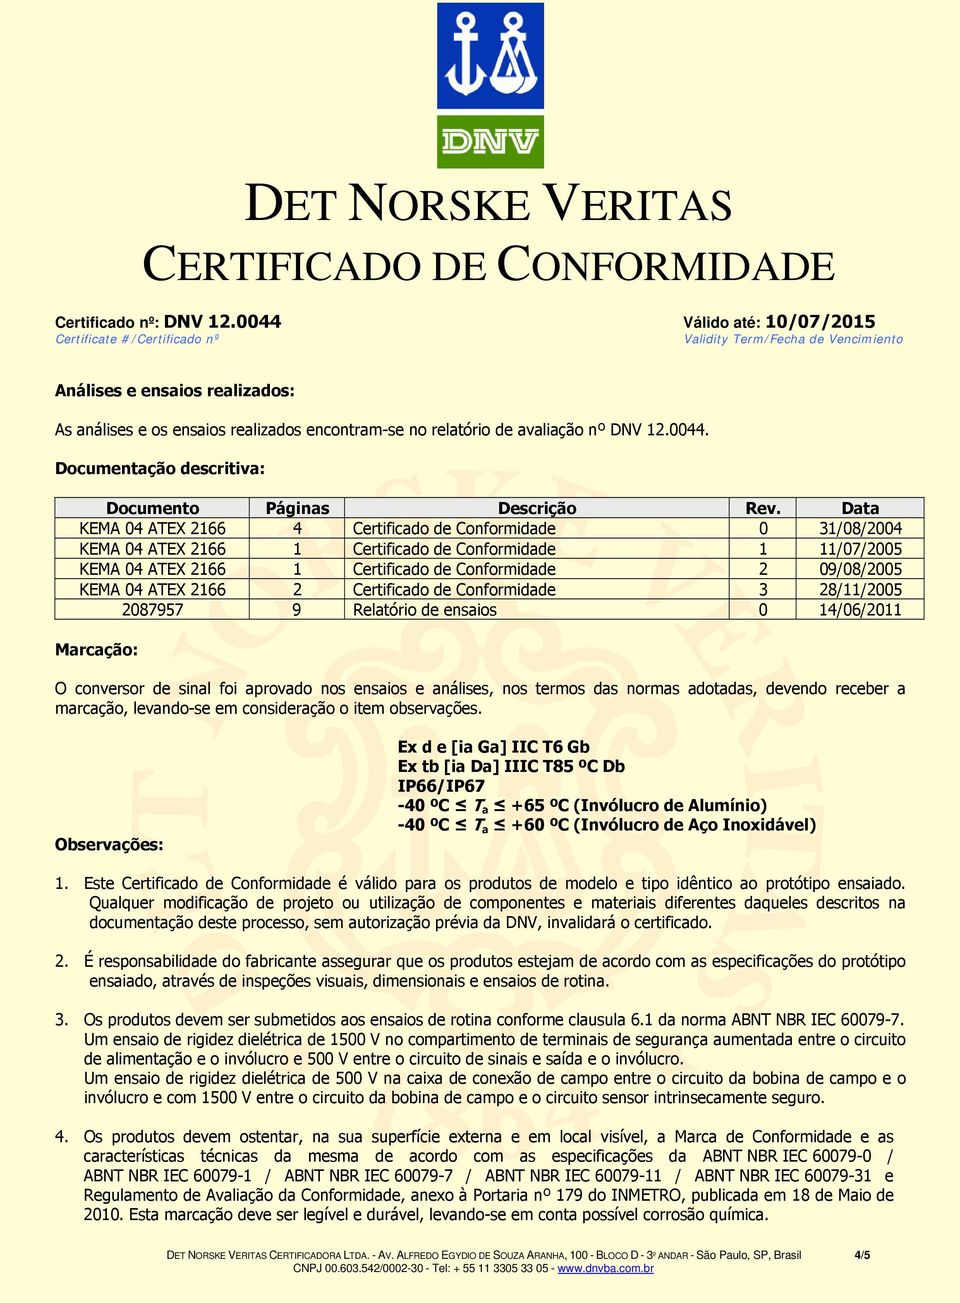 ATEX 2166 2 Certificado de Conformidade 3 28/11/2005 2087957 9 Relatório de ensaios 0 14/06/2011 Marcação: O conversor de sinal foi aprovado nos ensaios e análises, nos termos das normas adotadas,